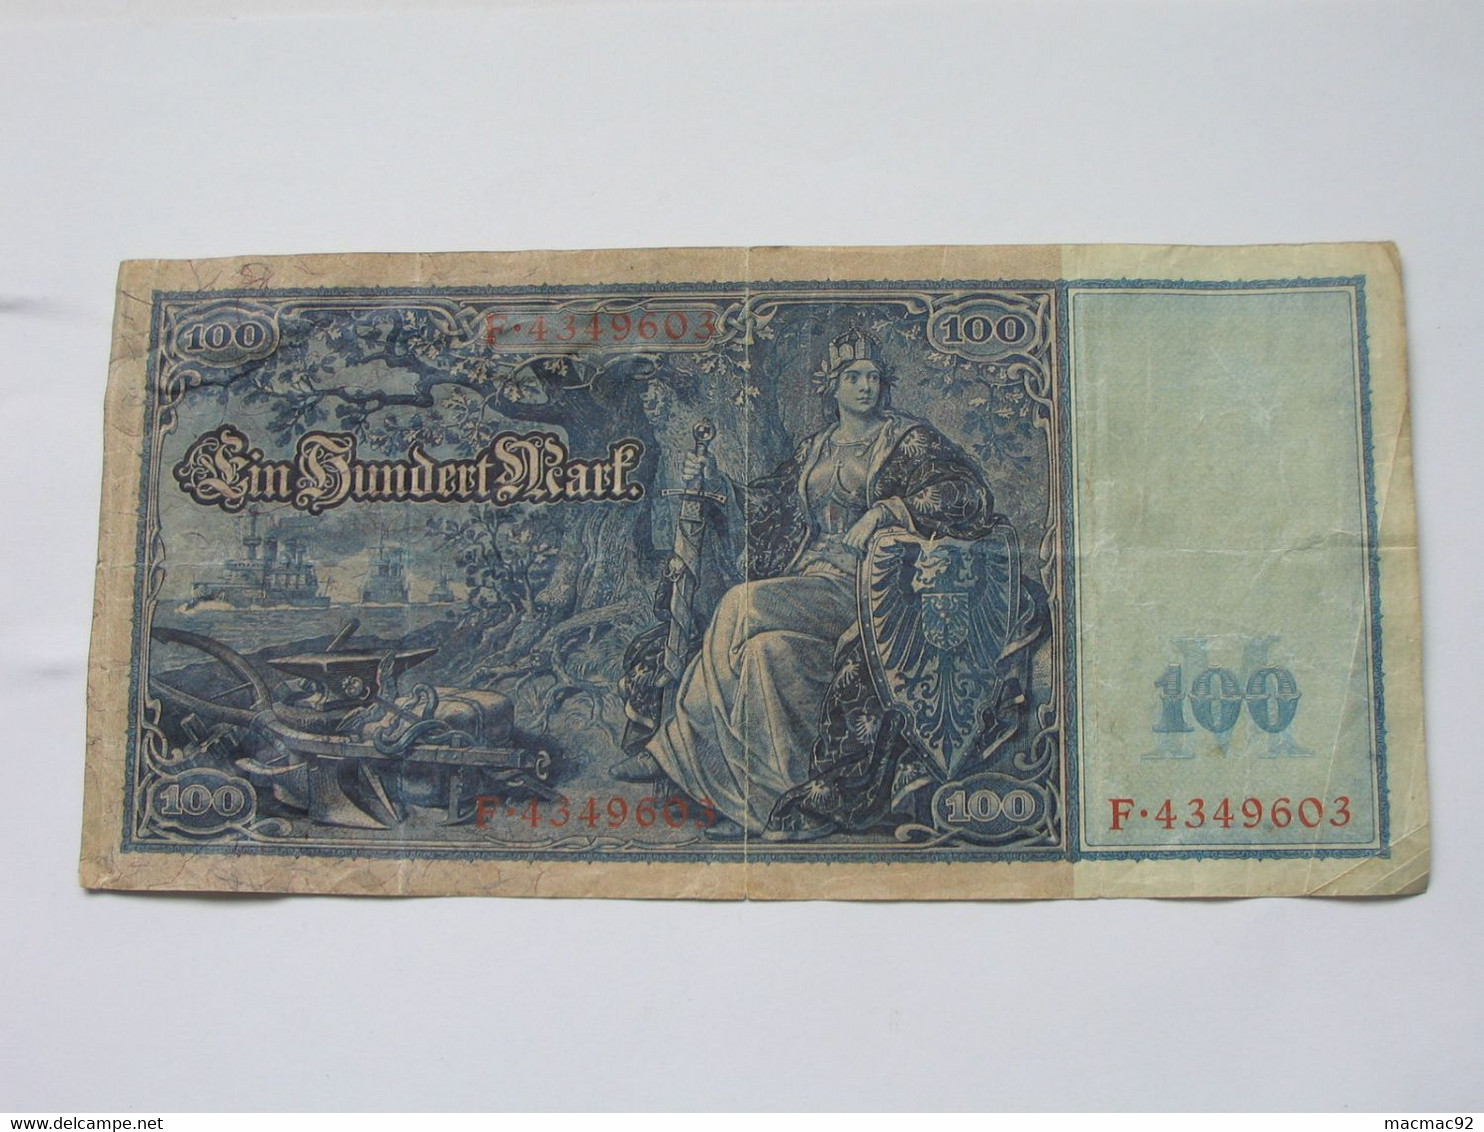 100 EINHUNDERT  Mark - Berlin 1910  Reichsbanknote - Germany **** EN ACHAT IMMEDIAT **** - 100 Mark